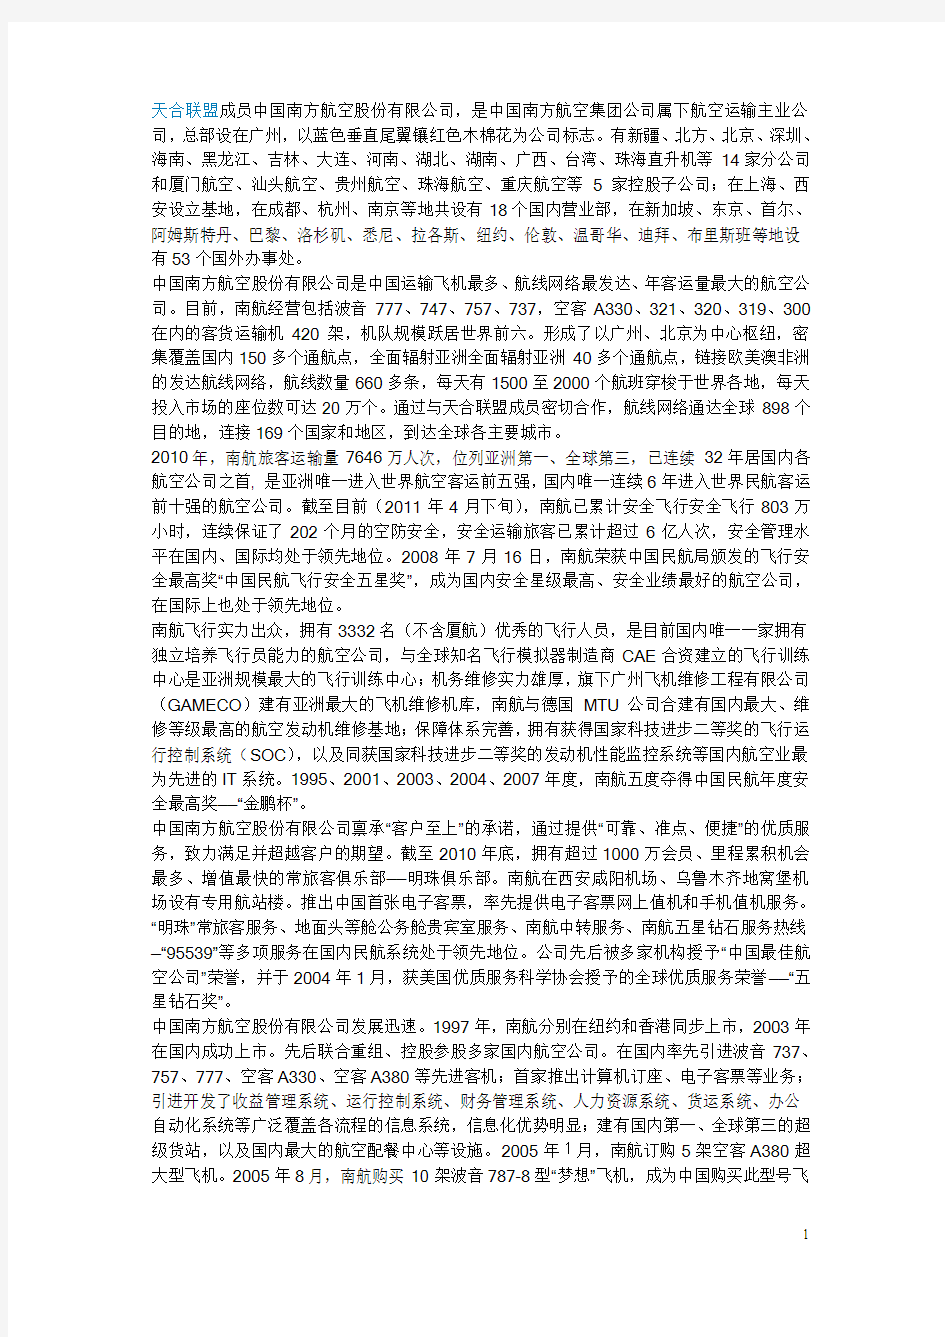 天合联盟成员中国南方航空股份有限公司